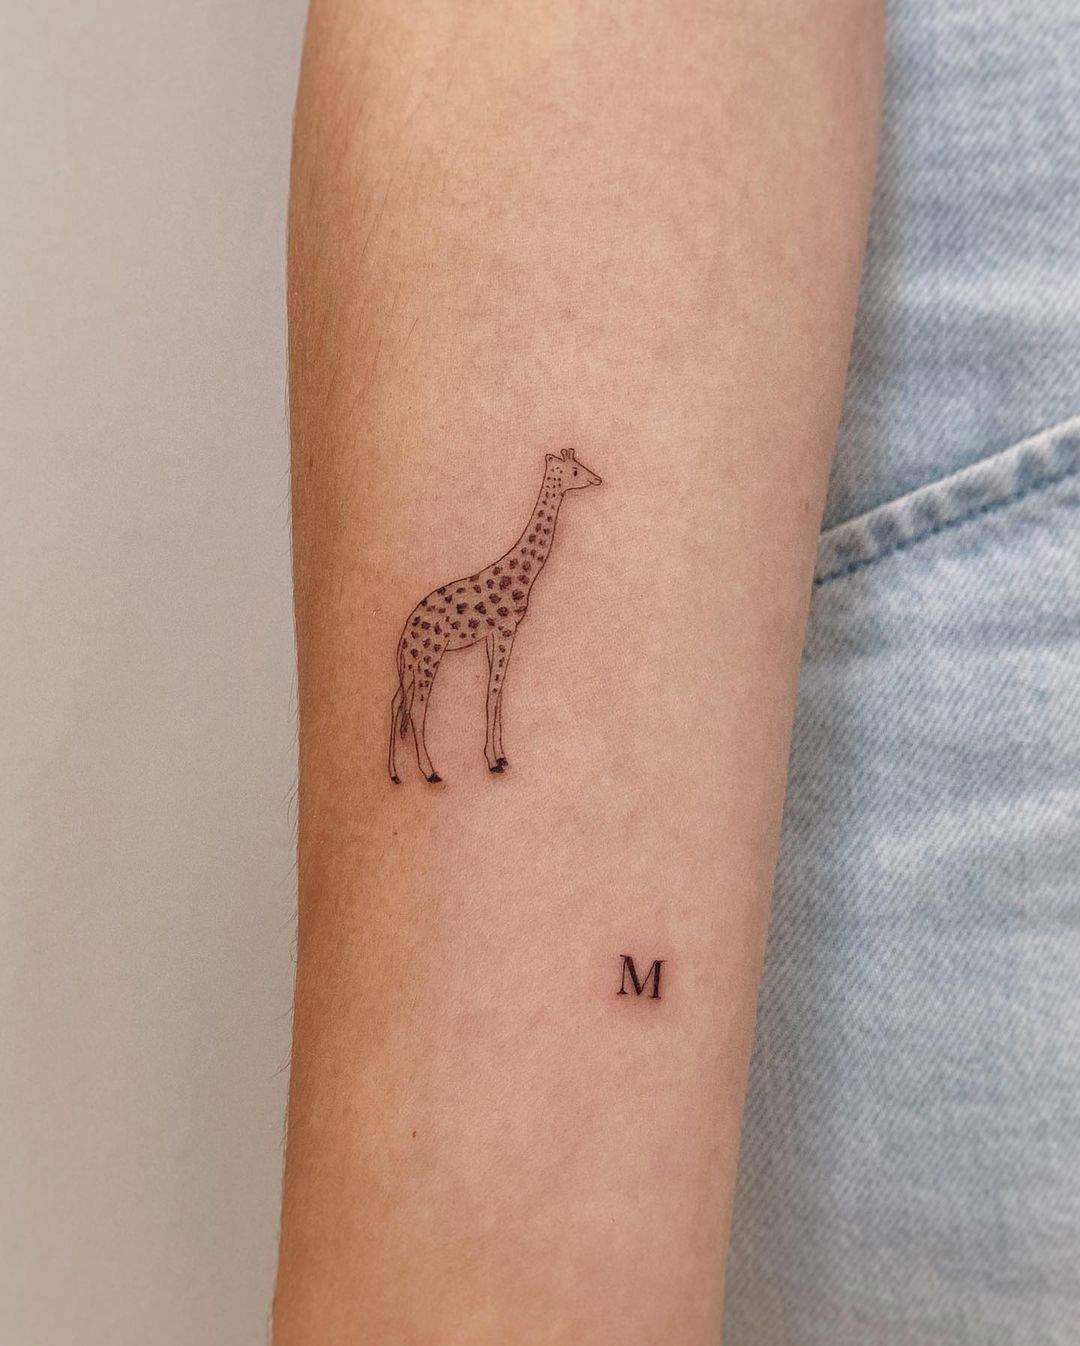 Una jirafa y una pequeña M tatuadas en el brazo